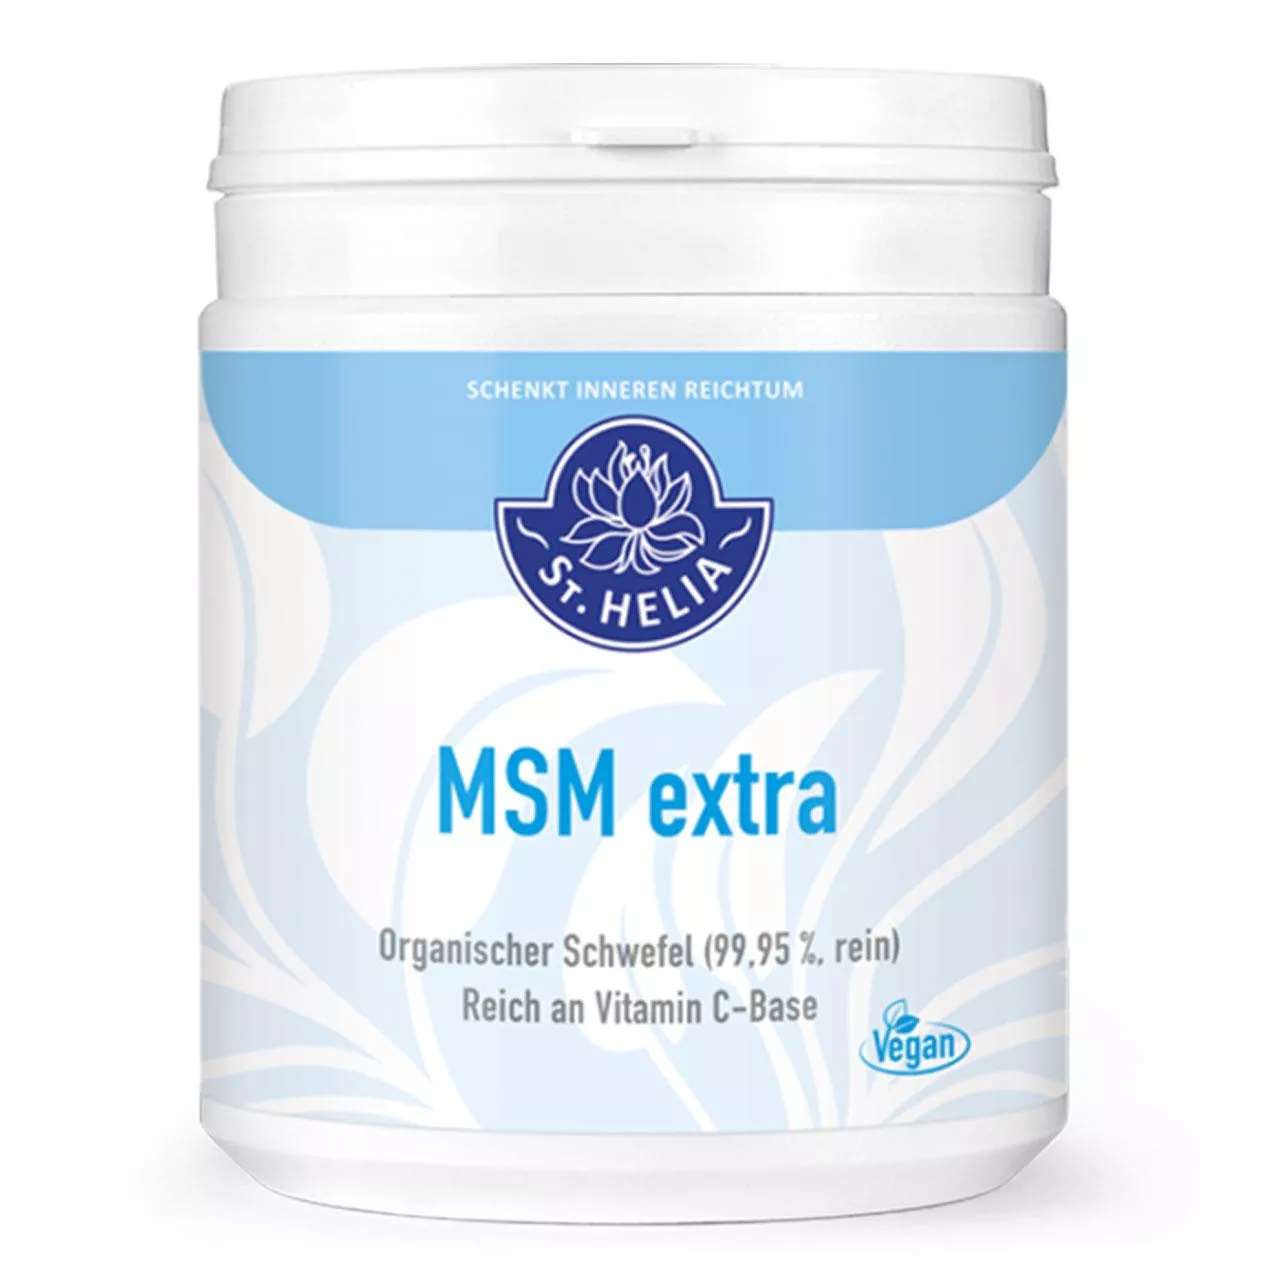 MSM extra plus Vitamin C Pulver von St. Helia beinhaltet 500 Gramm